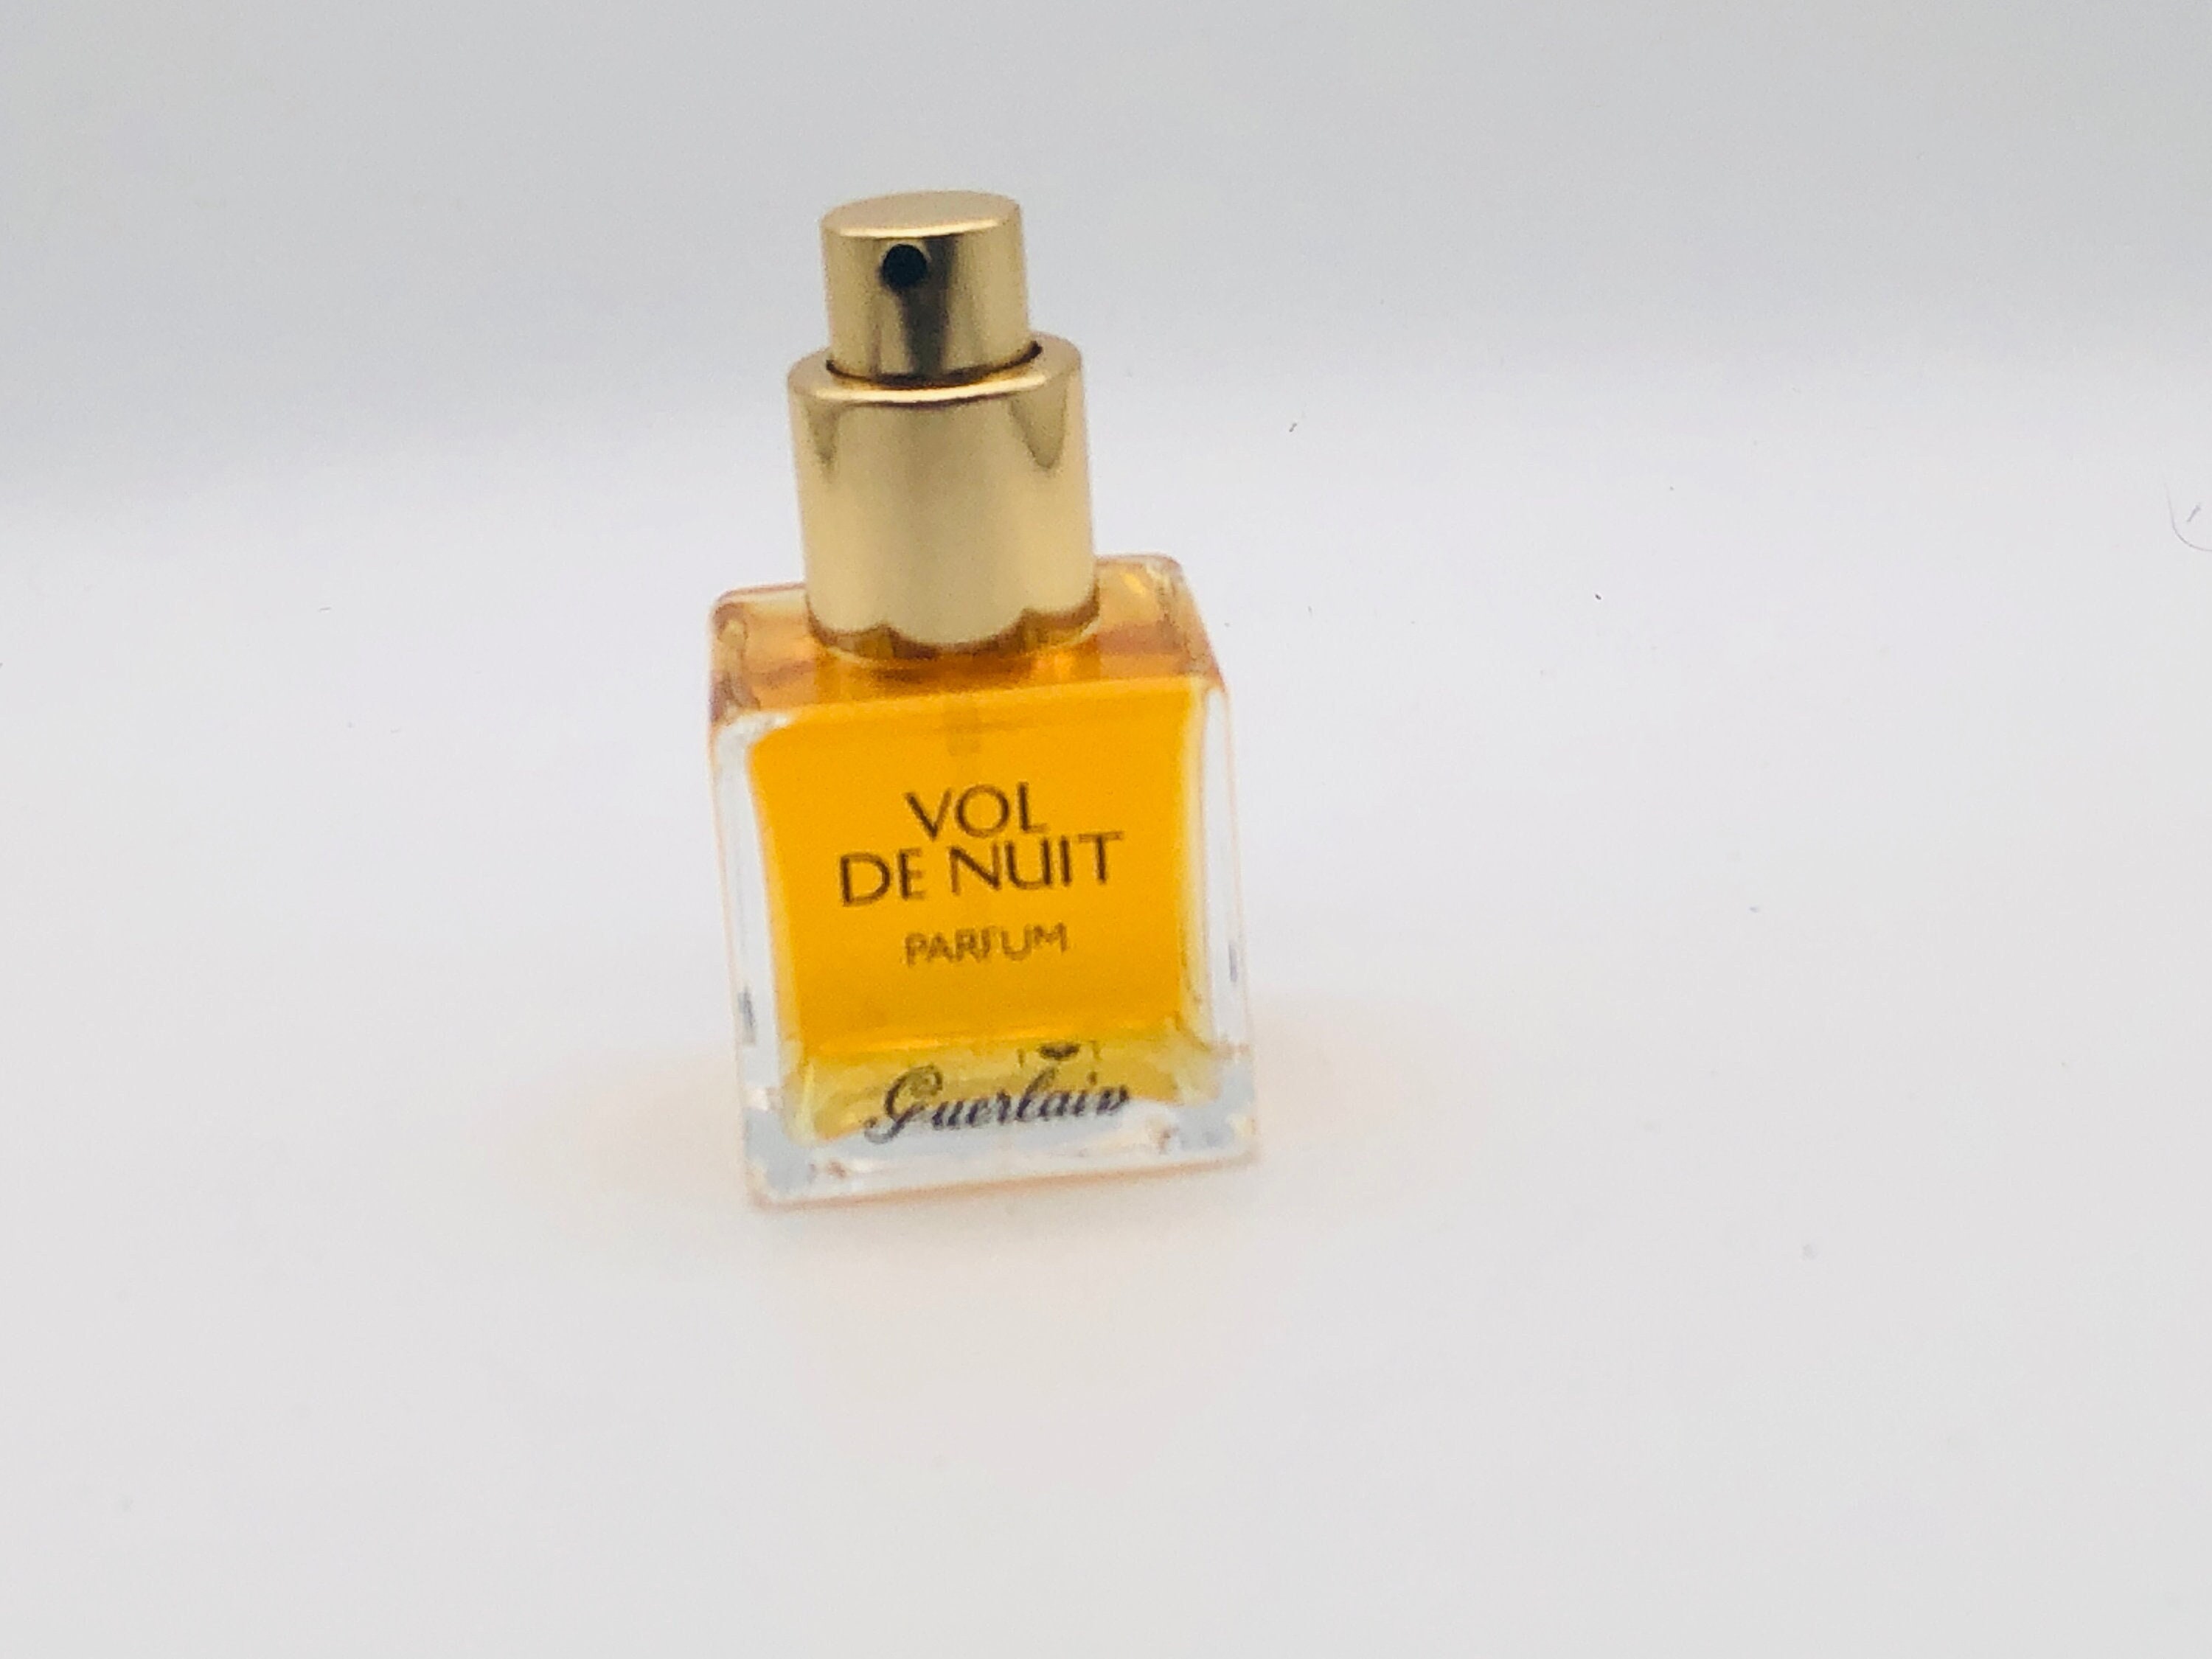 GUERLAIN VOL De NUIT Parfum Extrait 30 Ml Spray Pure Perfume